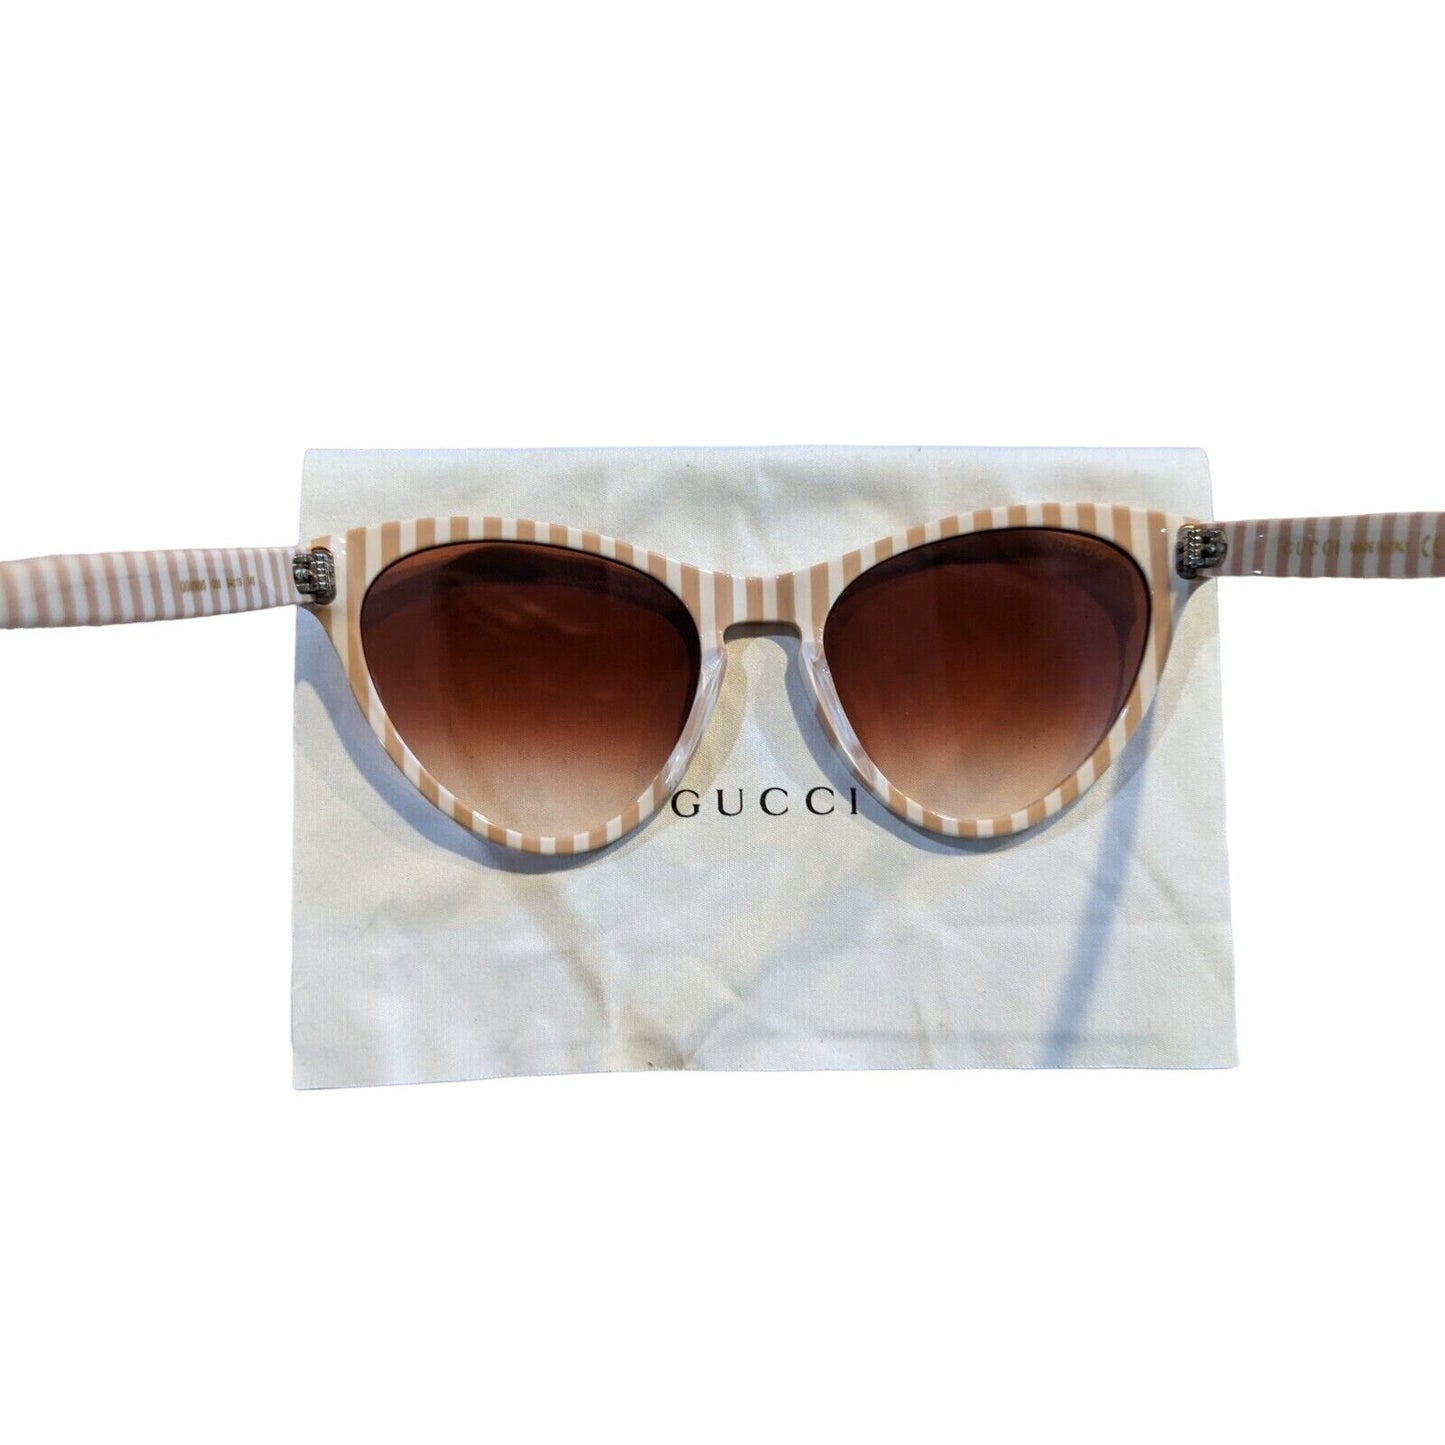 Gucci tan & white striped plastic cat's eye sunglasses